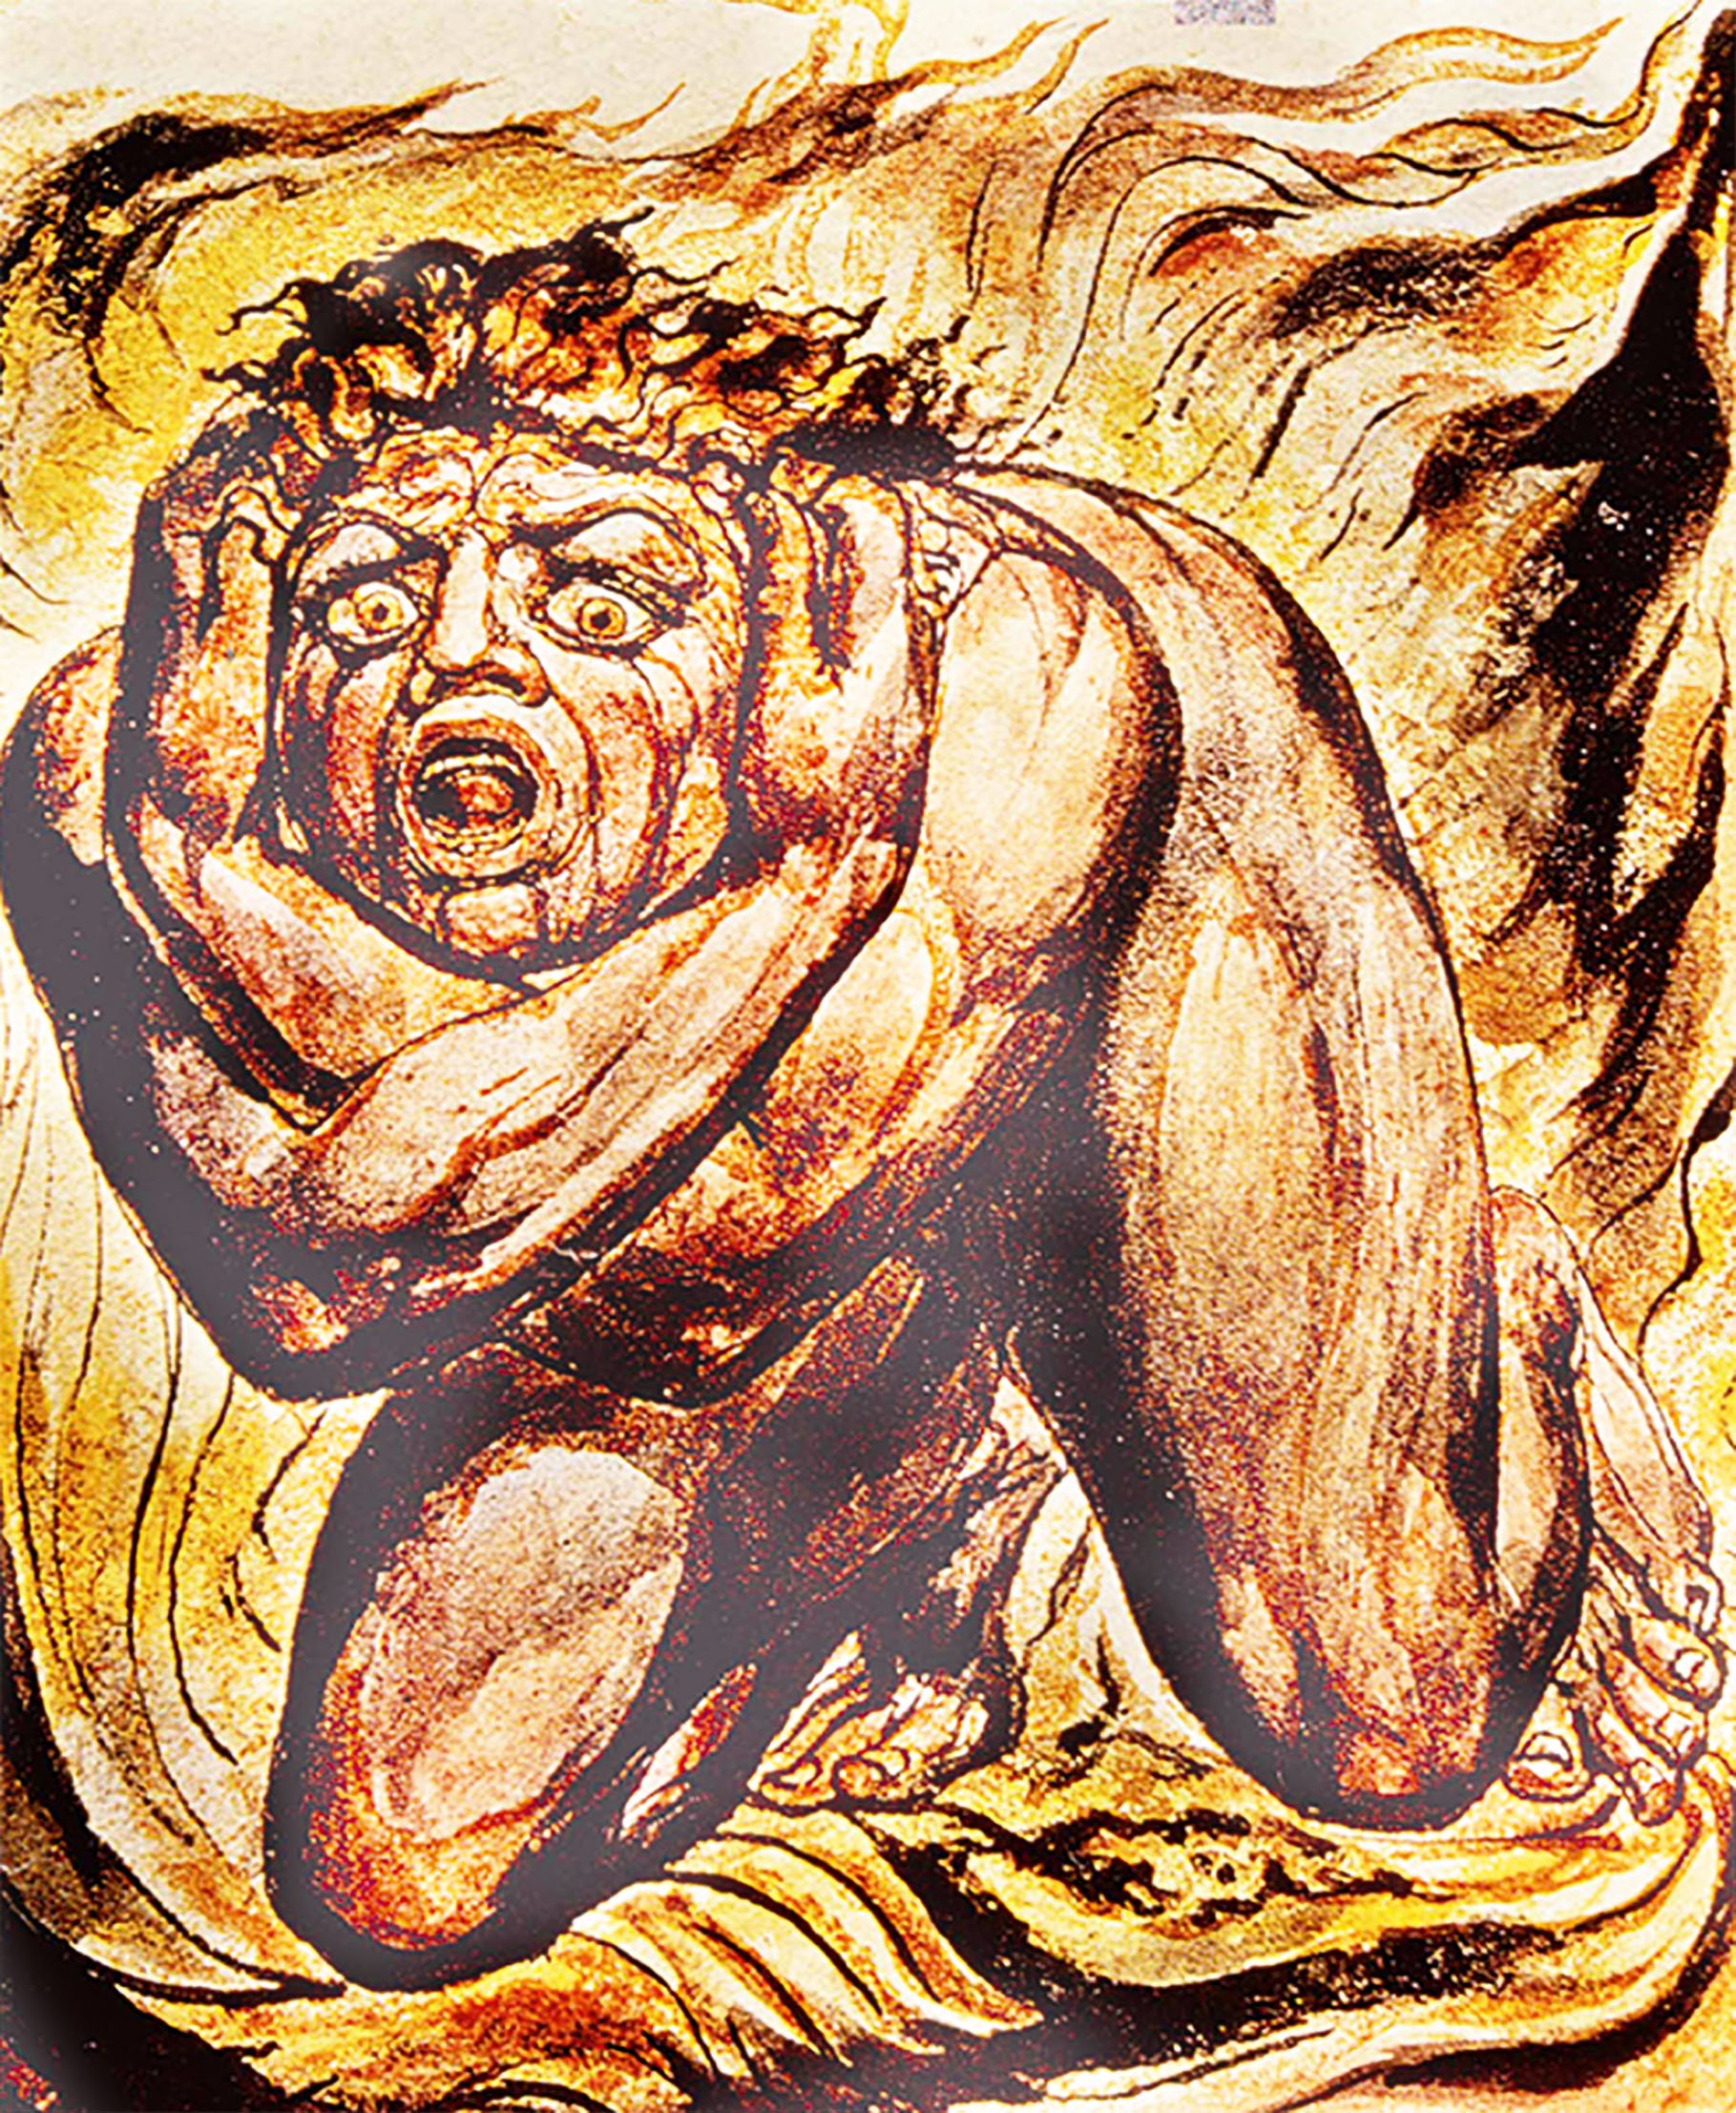 William Blake’s iconic images of 'Cringing in Terror'